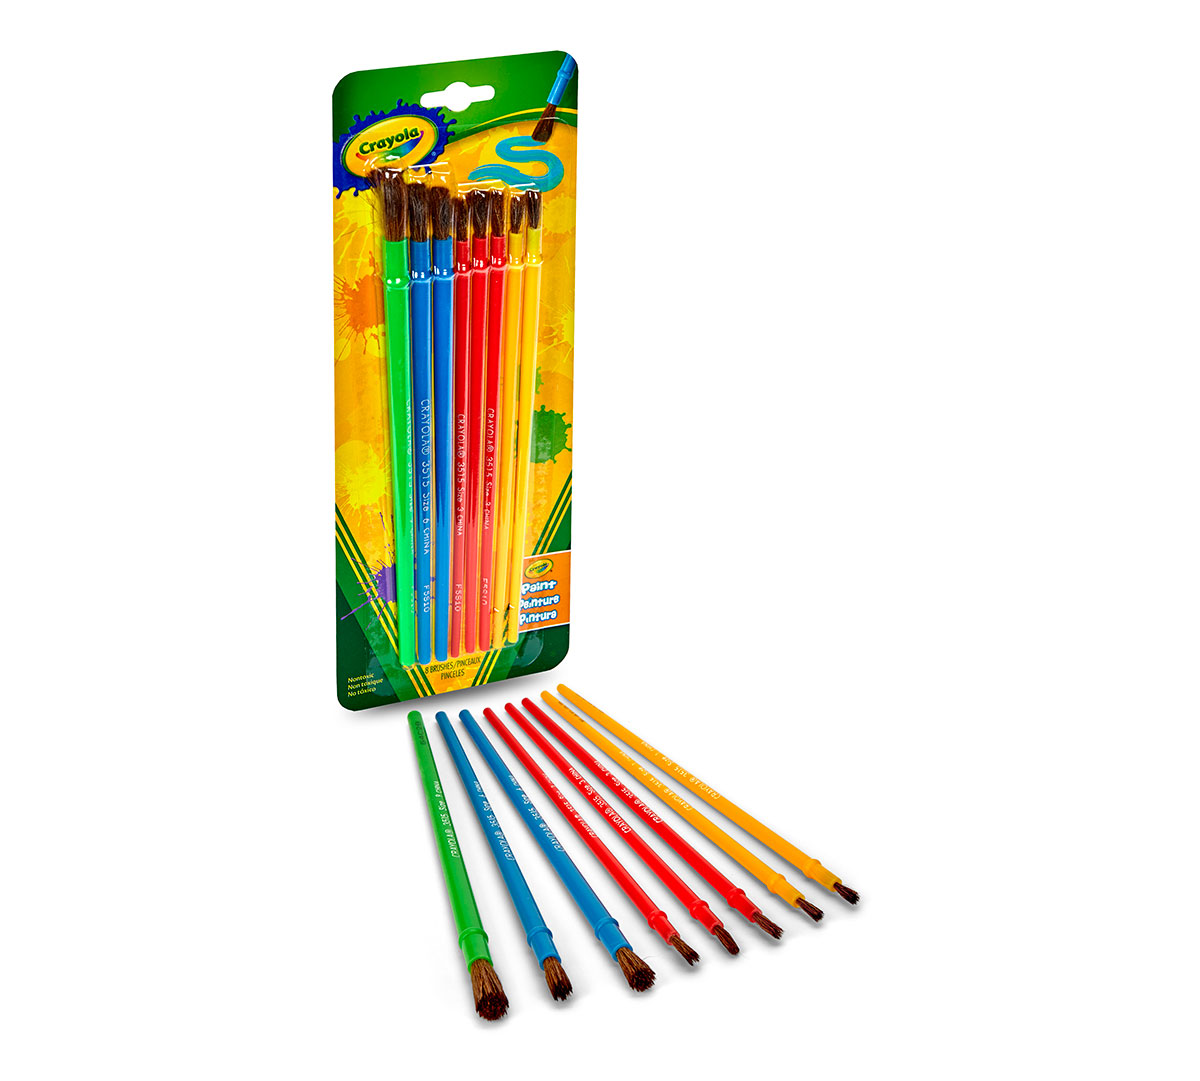 SagaSave 8Pcs Childrens Paint Brush and Non-Spill Paint Pot Set